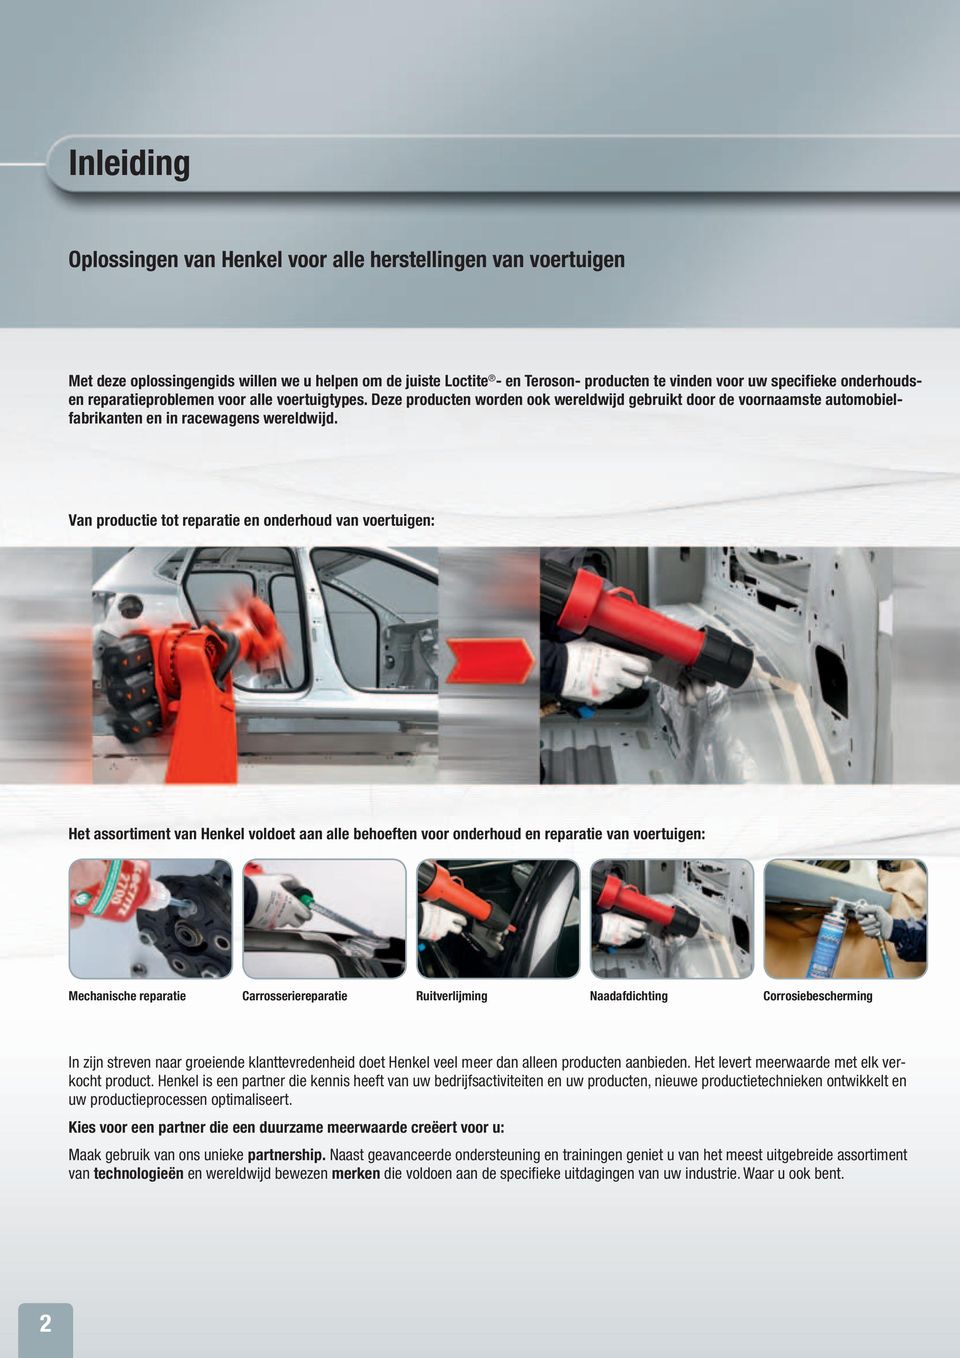 Van productie tot reparatie en onderhoud van voertuigen: Het assortiment van Henkel voldoet aan alle behoeften voor onderhoud en reparatie van voertuigen: Mechanische reparatie Carrosseriereparatie